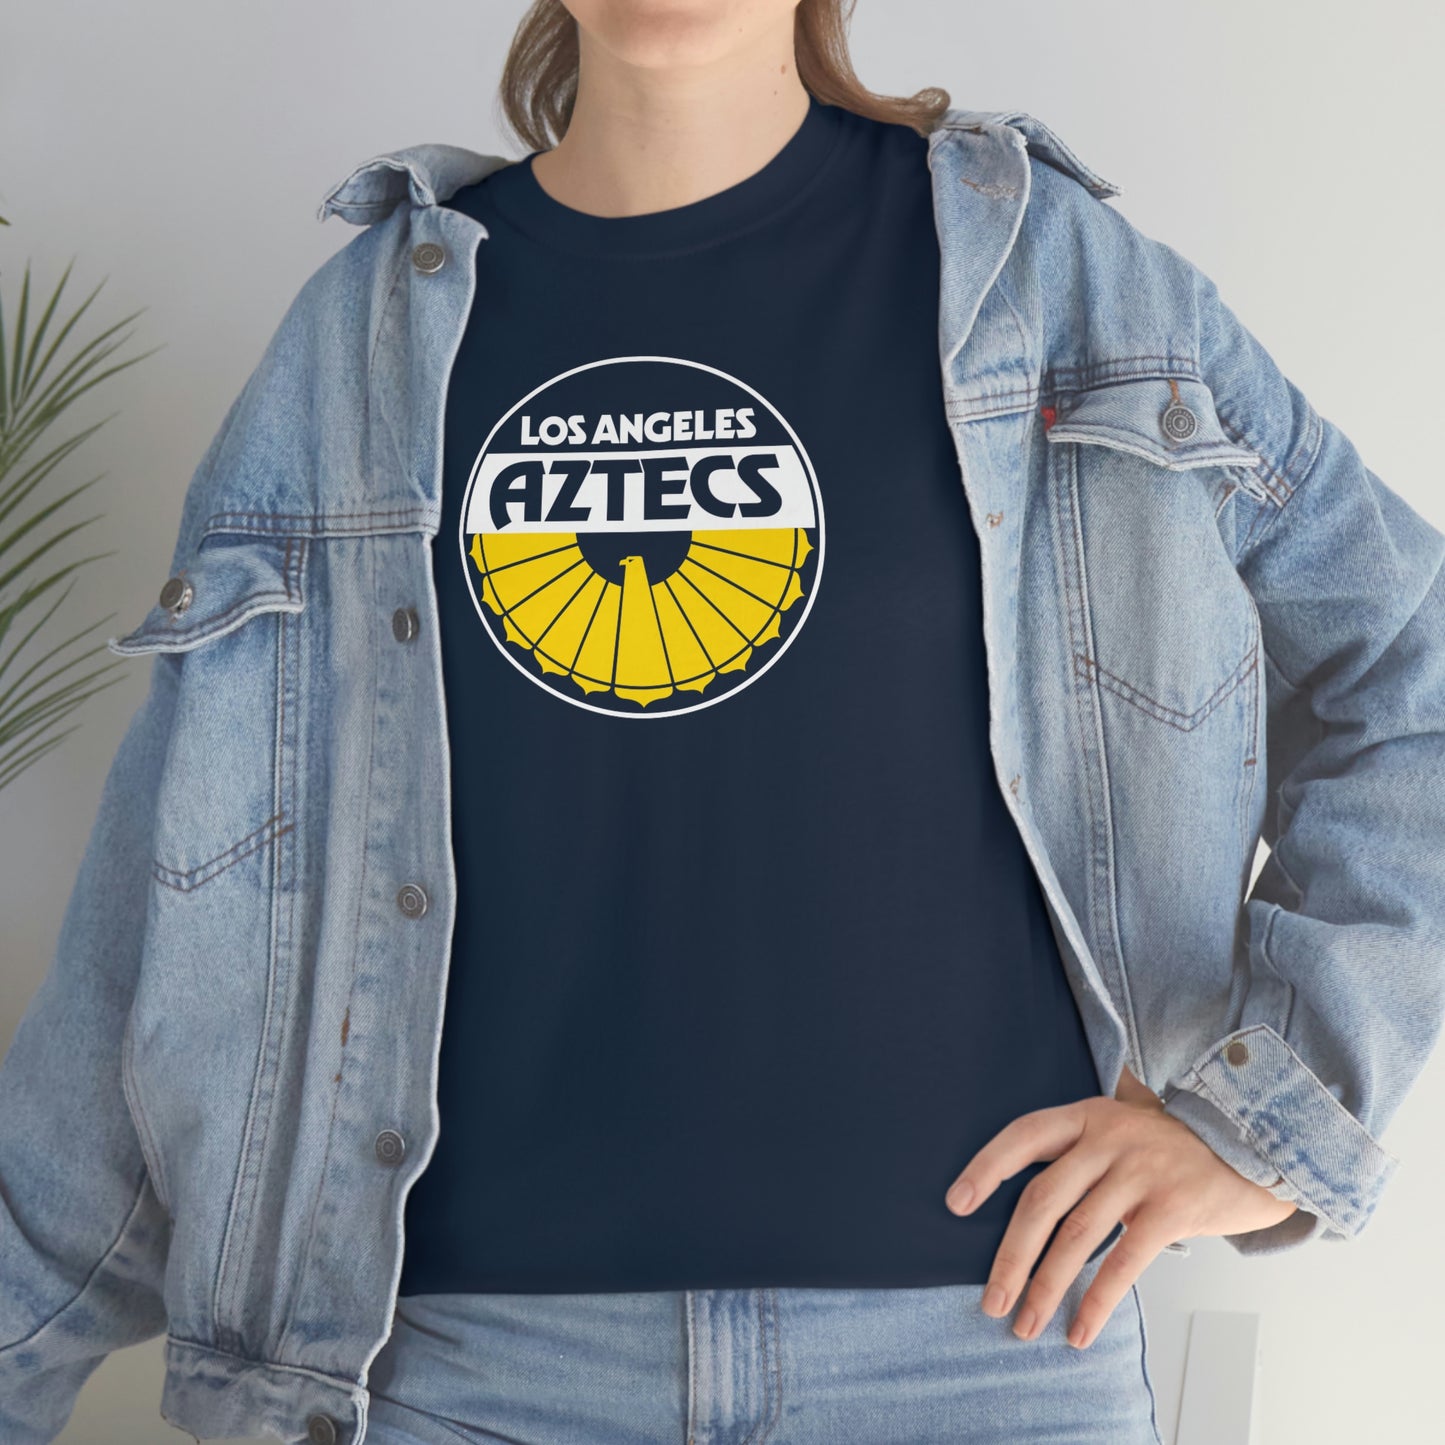 Los Angeles Aztecs T-Shirt